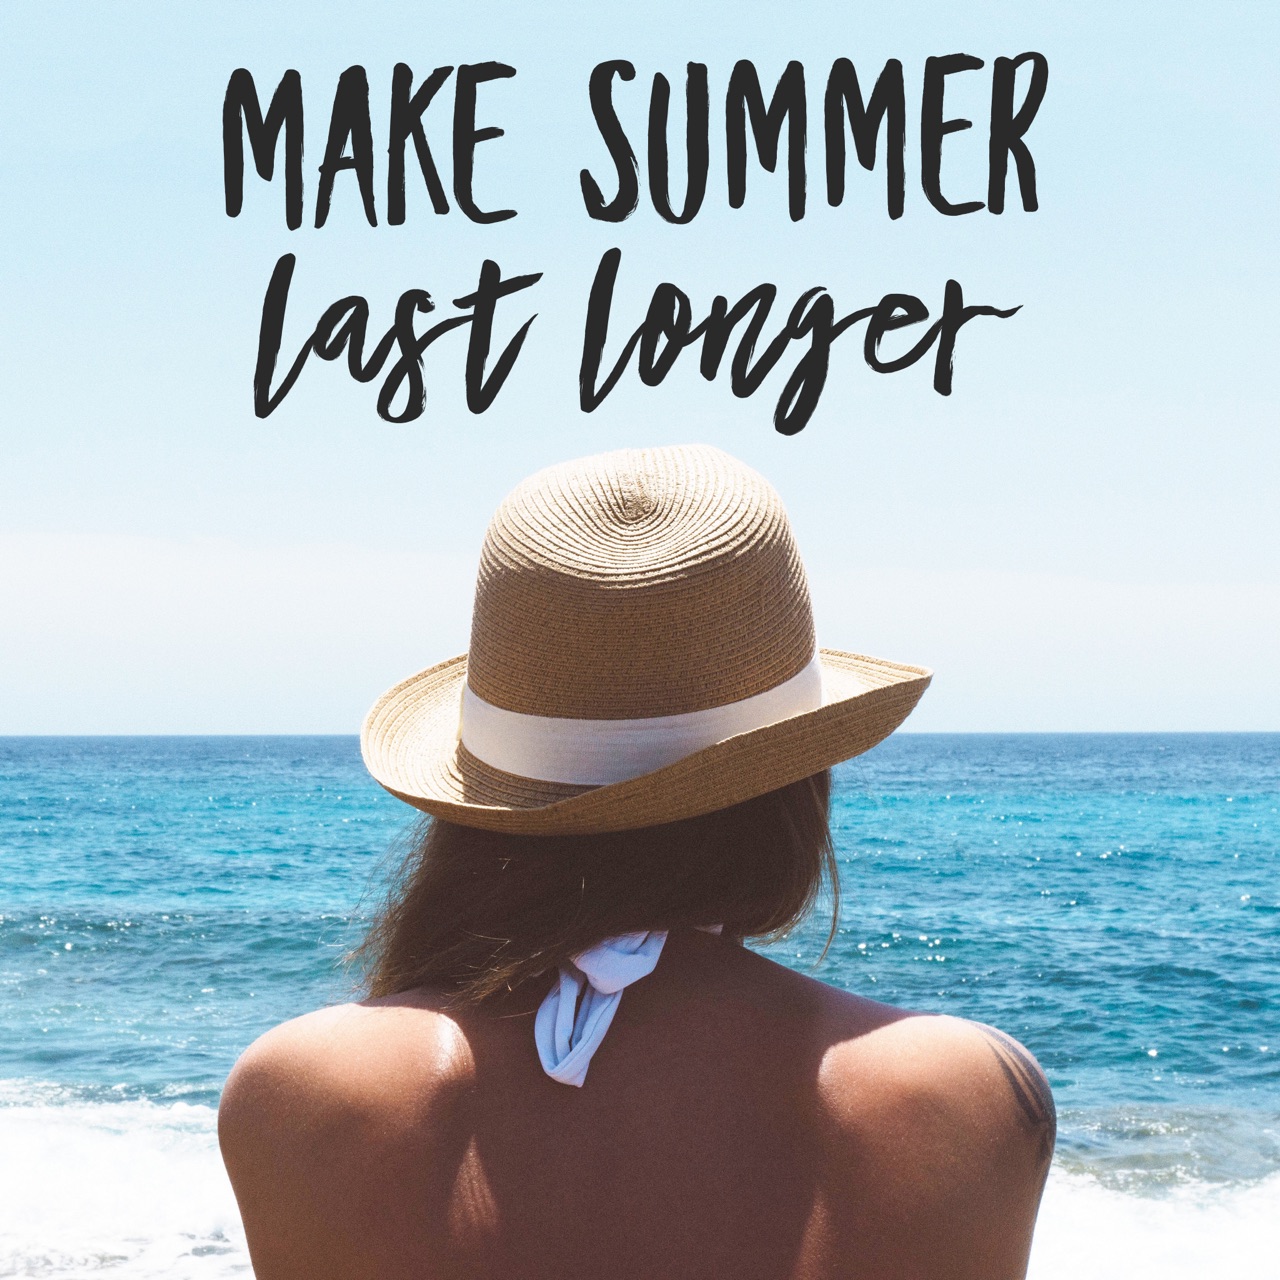 Make summer last longer.